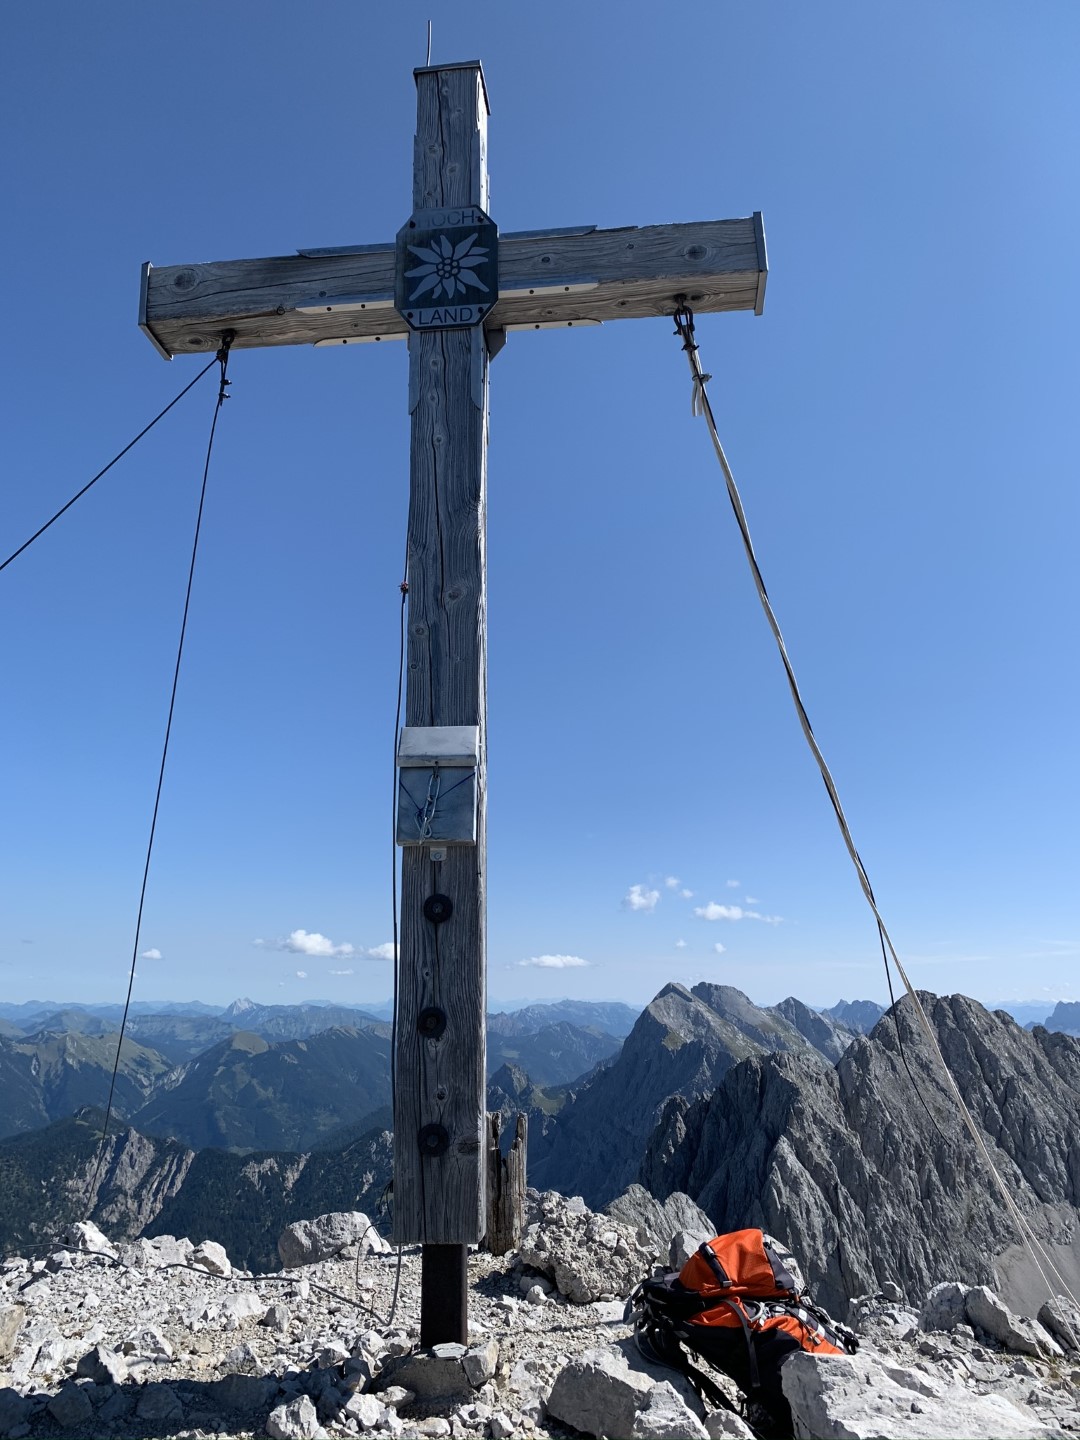 Gipfelkreuz mit Blick auf westliches Ende der nördlichen Karwendelkette